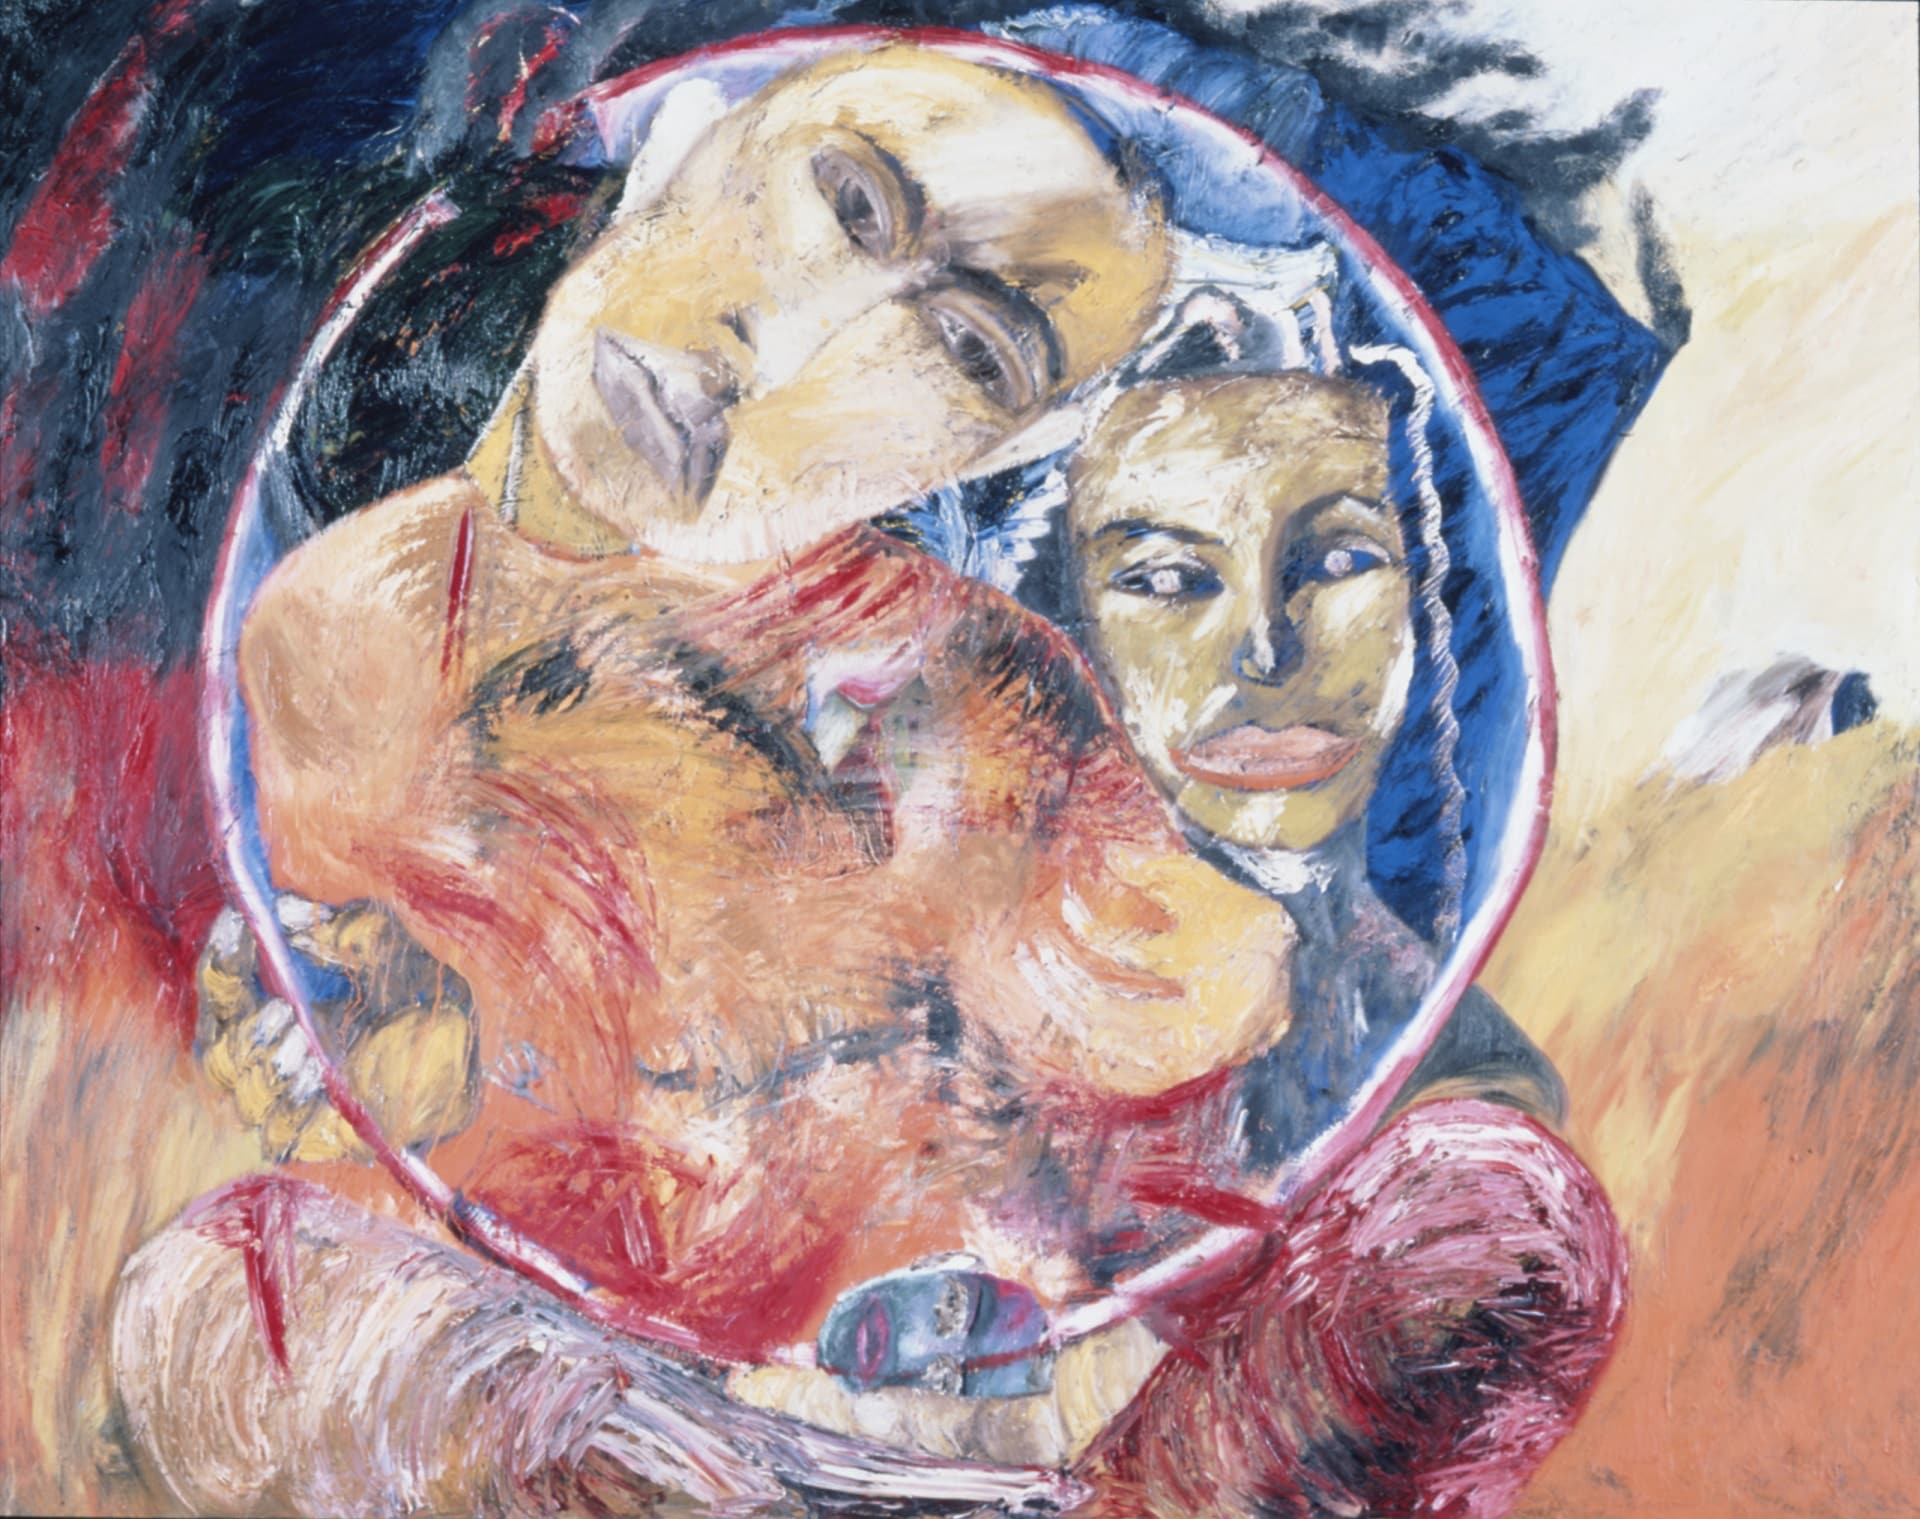 11. Francesco Clemente, Il cerchio di Milarepa, 1982, olio su tela, 200x250cm, Castello di Rivoli Museo d’Arte Contemporanea, Torino